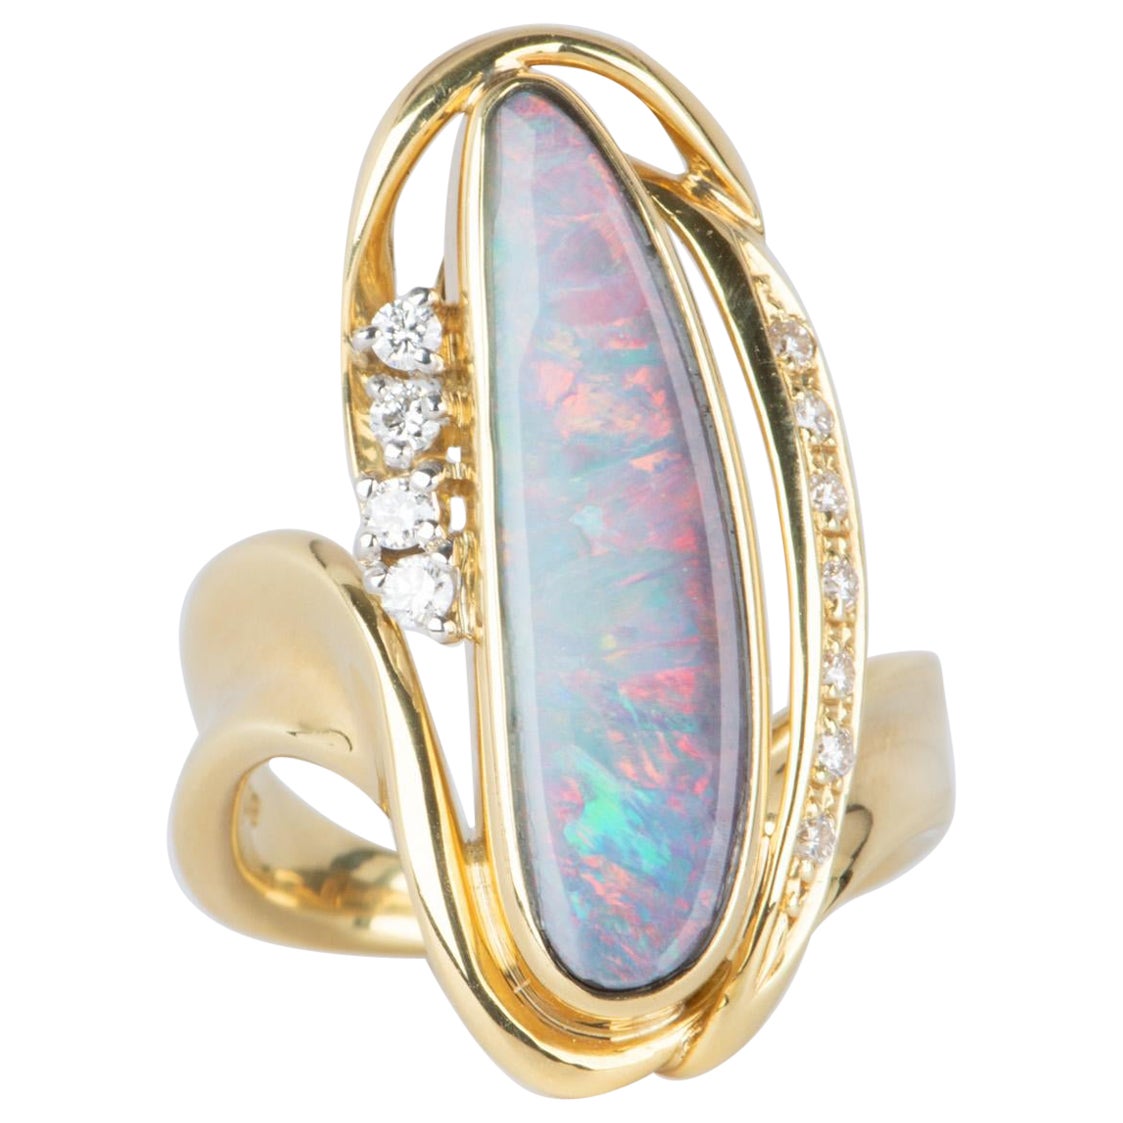 Australian Boulder Opal and Diamond Ring 18K Gold 13g V1109